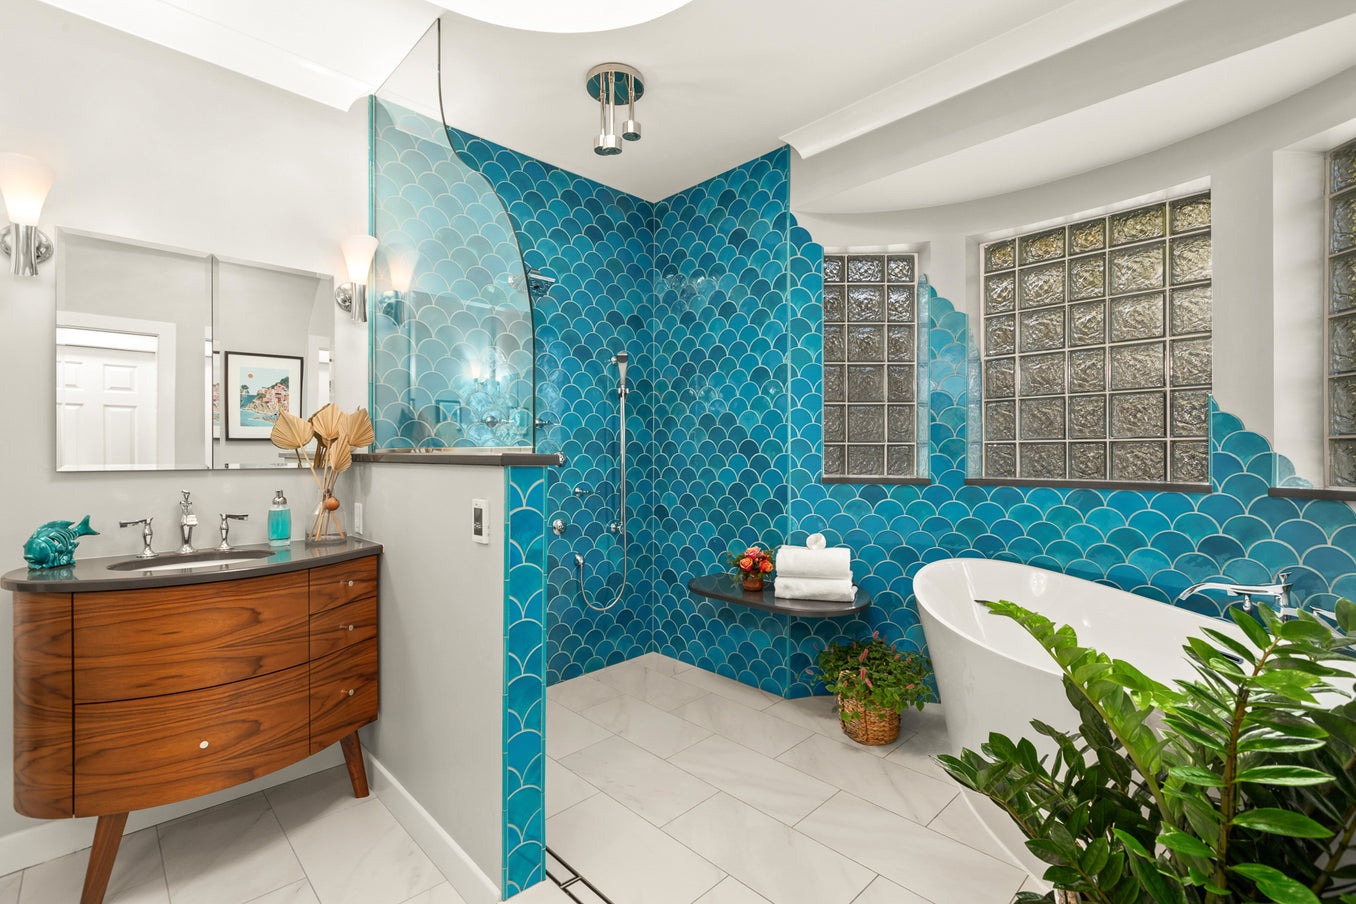 Nhà tắm với sự kết hợp của gạch vảy cá mosaic màu xanh nước biển tạo nên không gian với phong cách hiện đại.